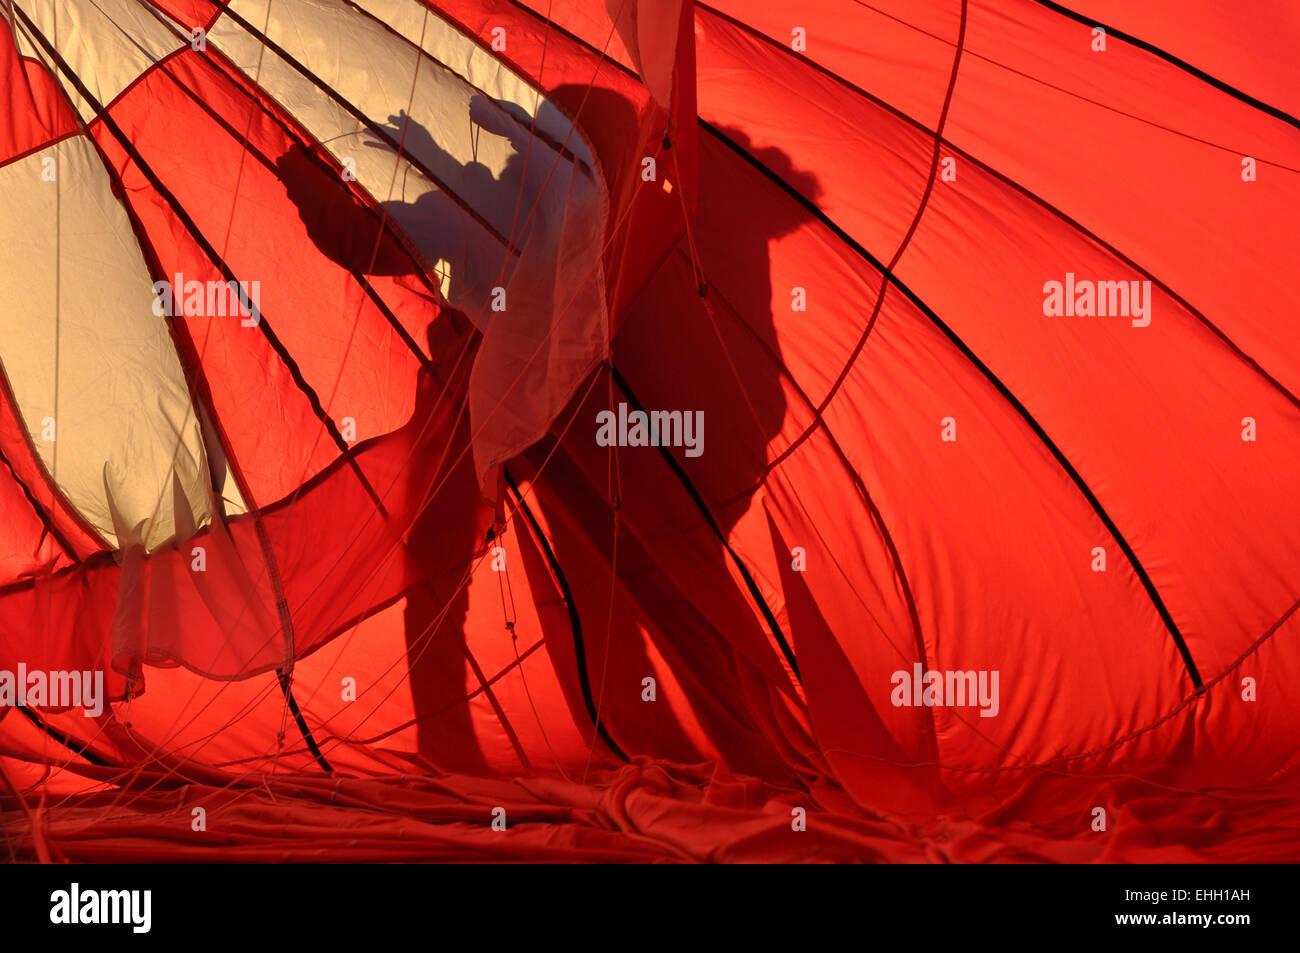 Hot Air Balloon Silhouette Stock Photo